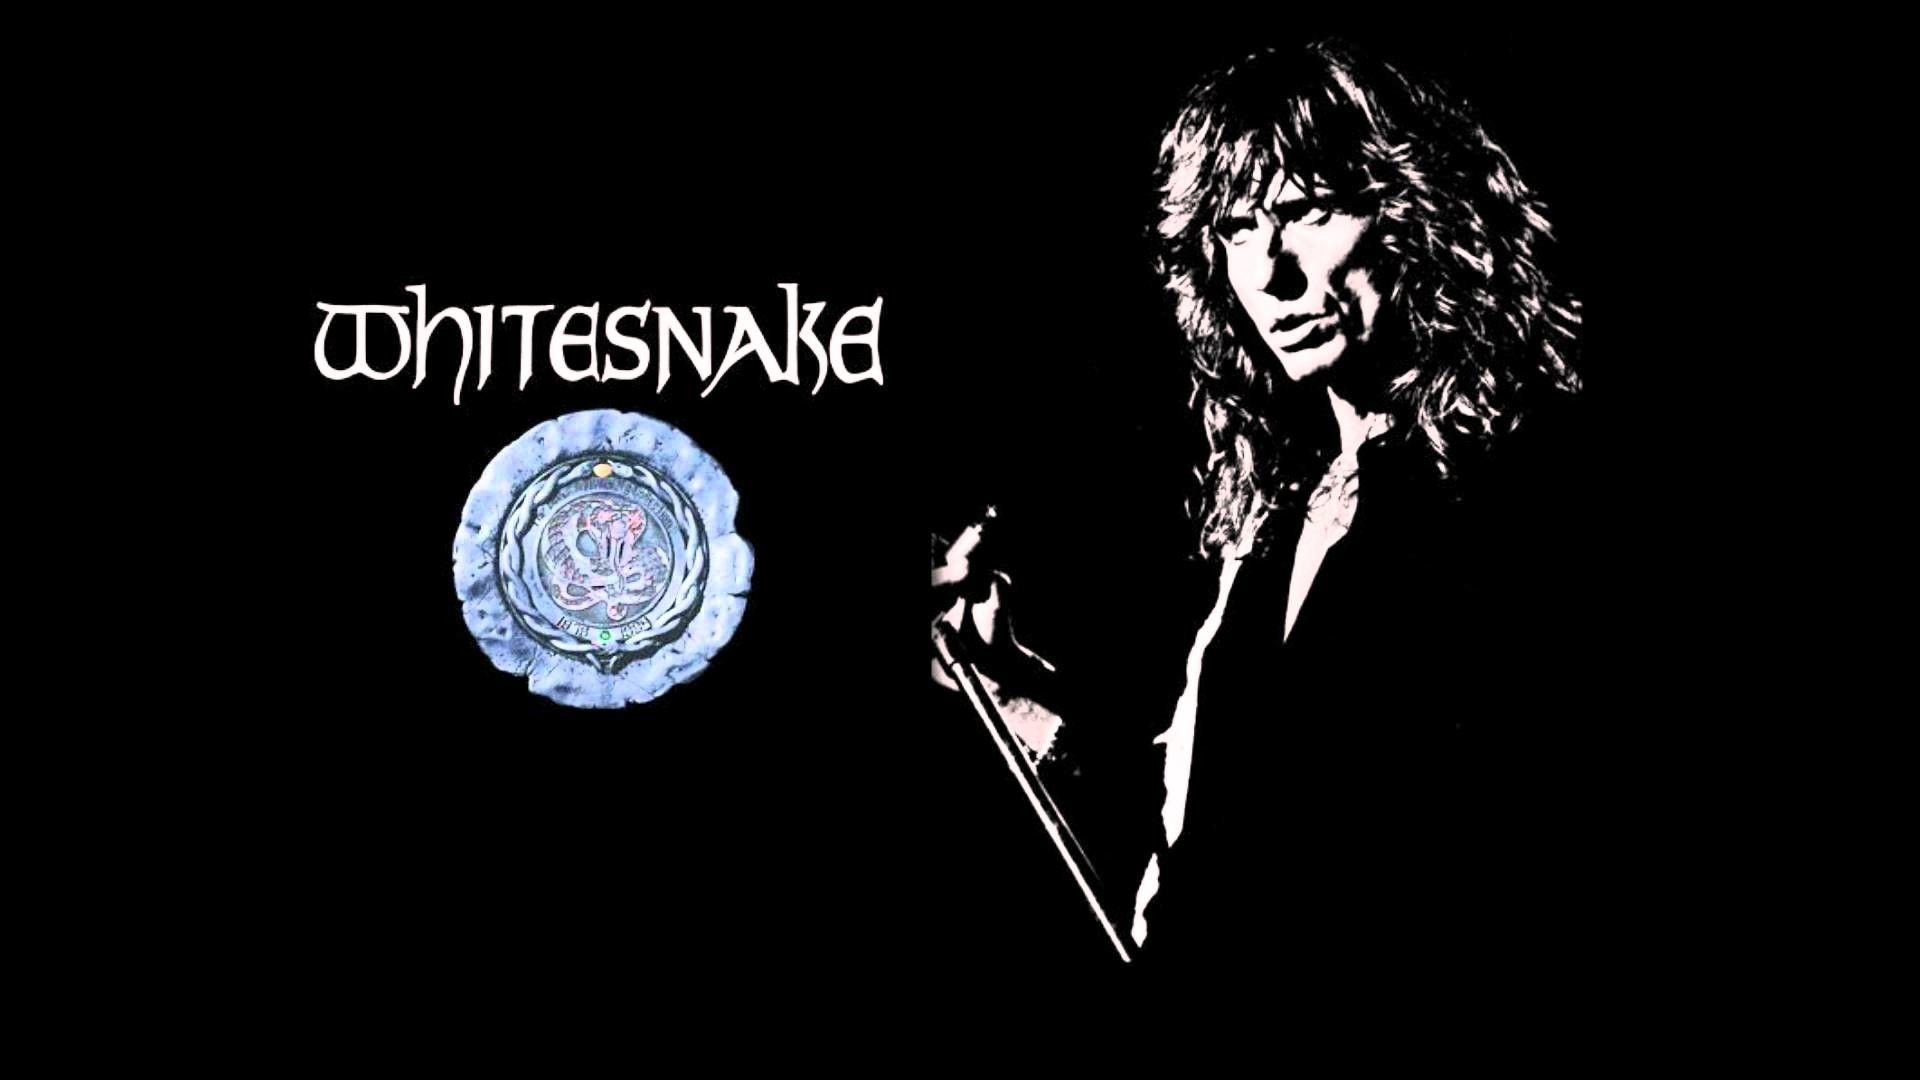 Whitesnake Wallpaper Free Whitesnake Background